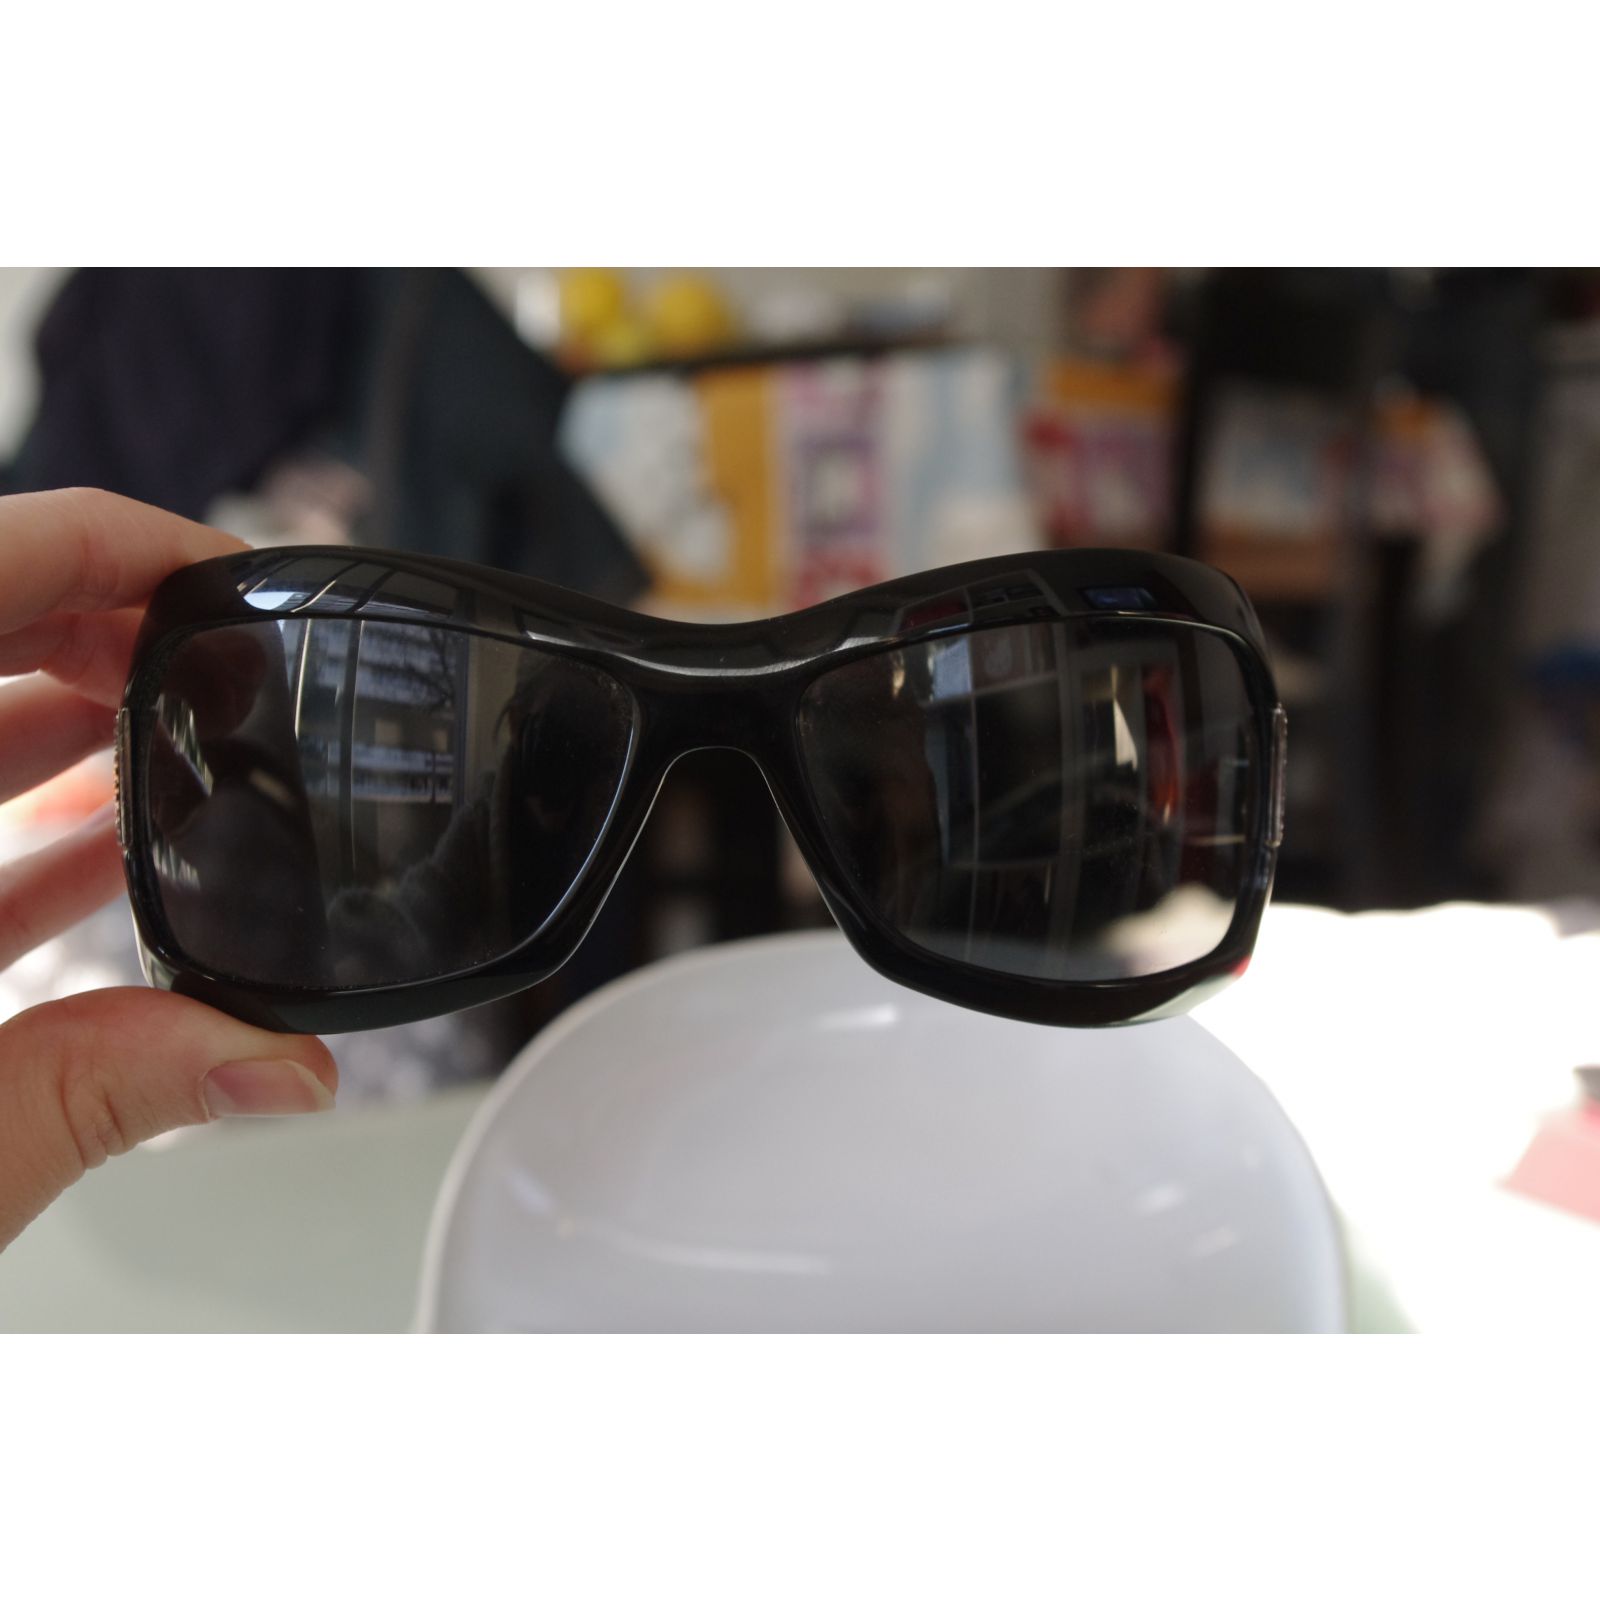 GUCCI | 倪妮演绎古驰中国新年专属款太阳眼镜- 眼镜在线NoteOptics.cn